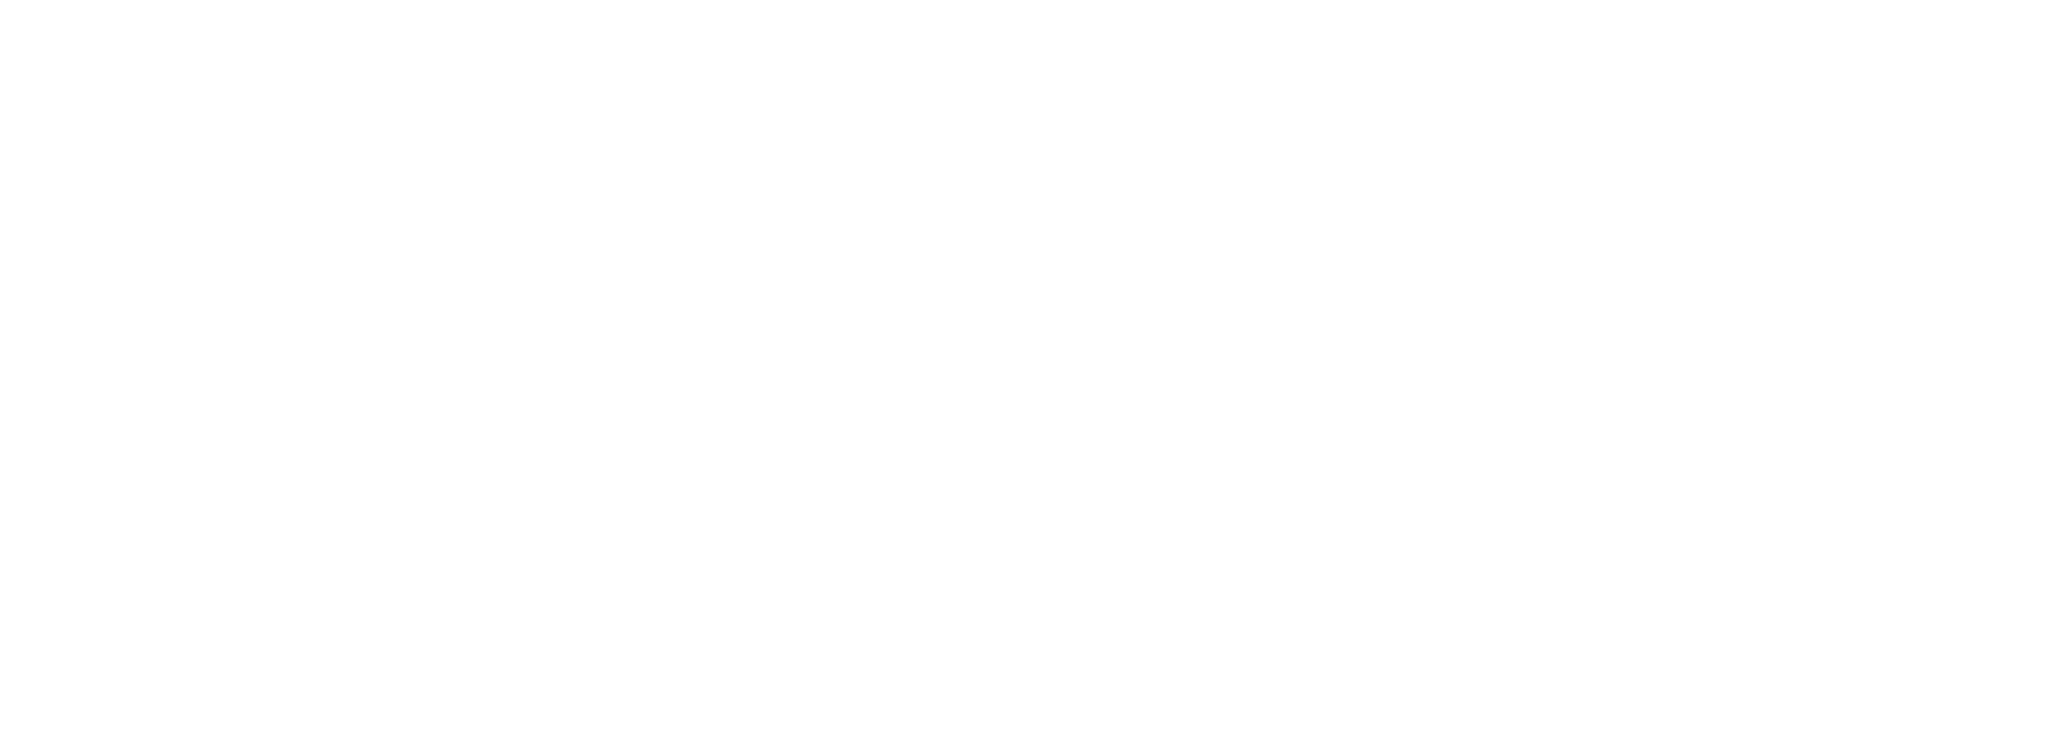 uconn one card office logo